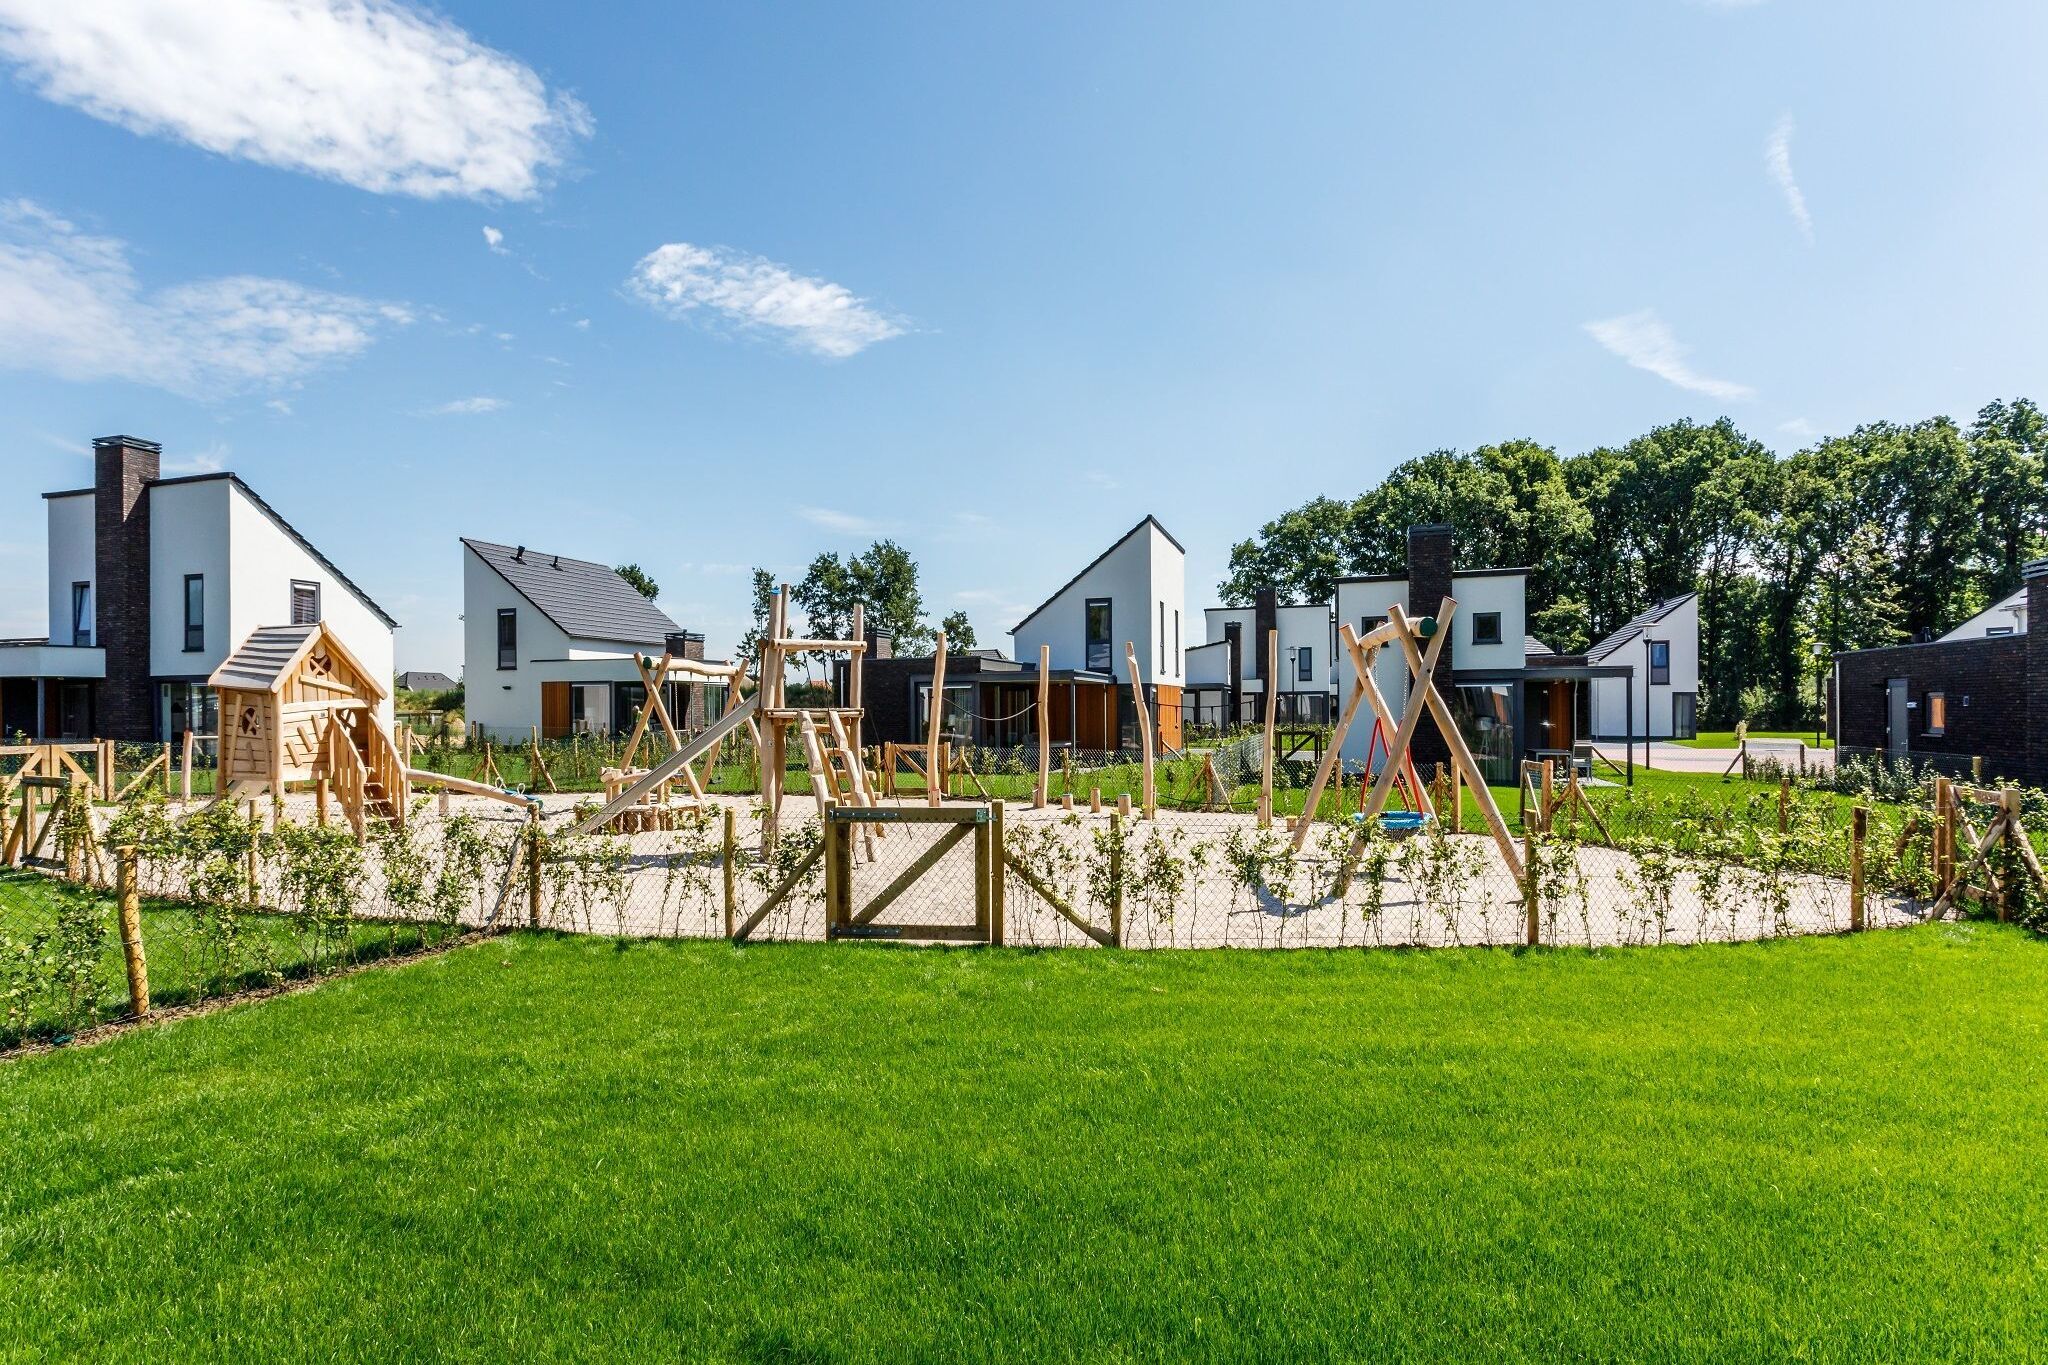 Villa mit Med -Kindergarten in Limburg